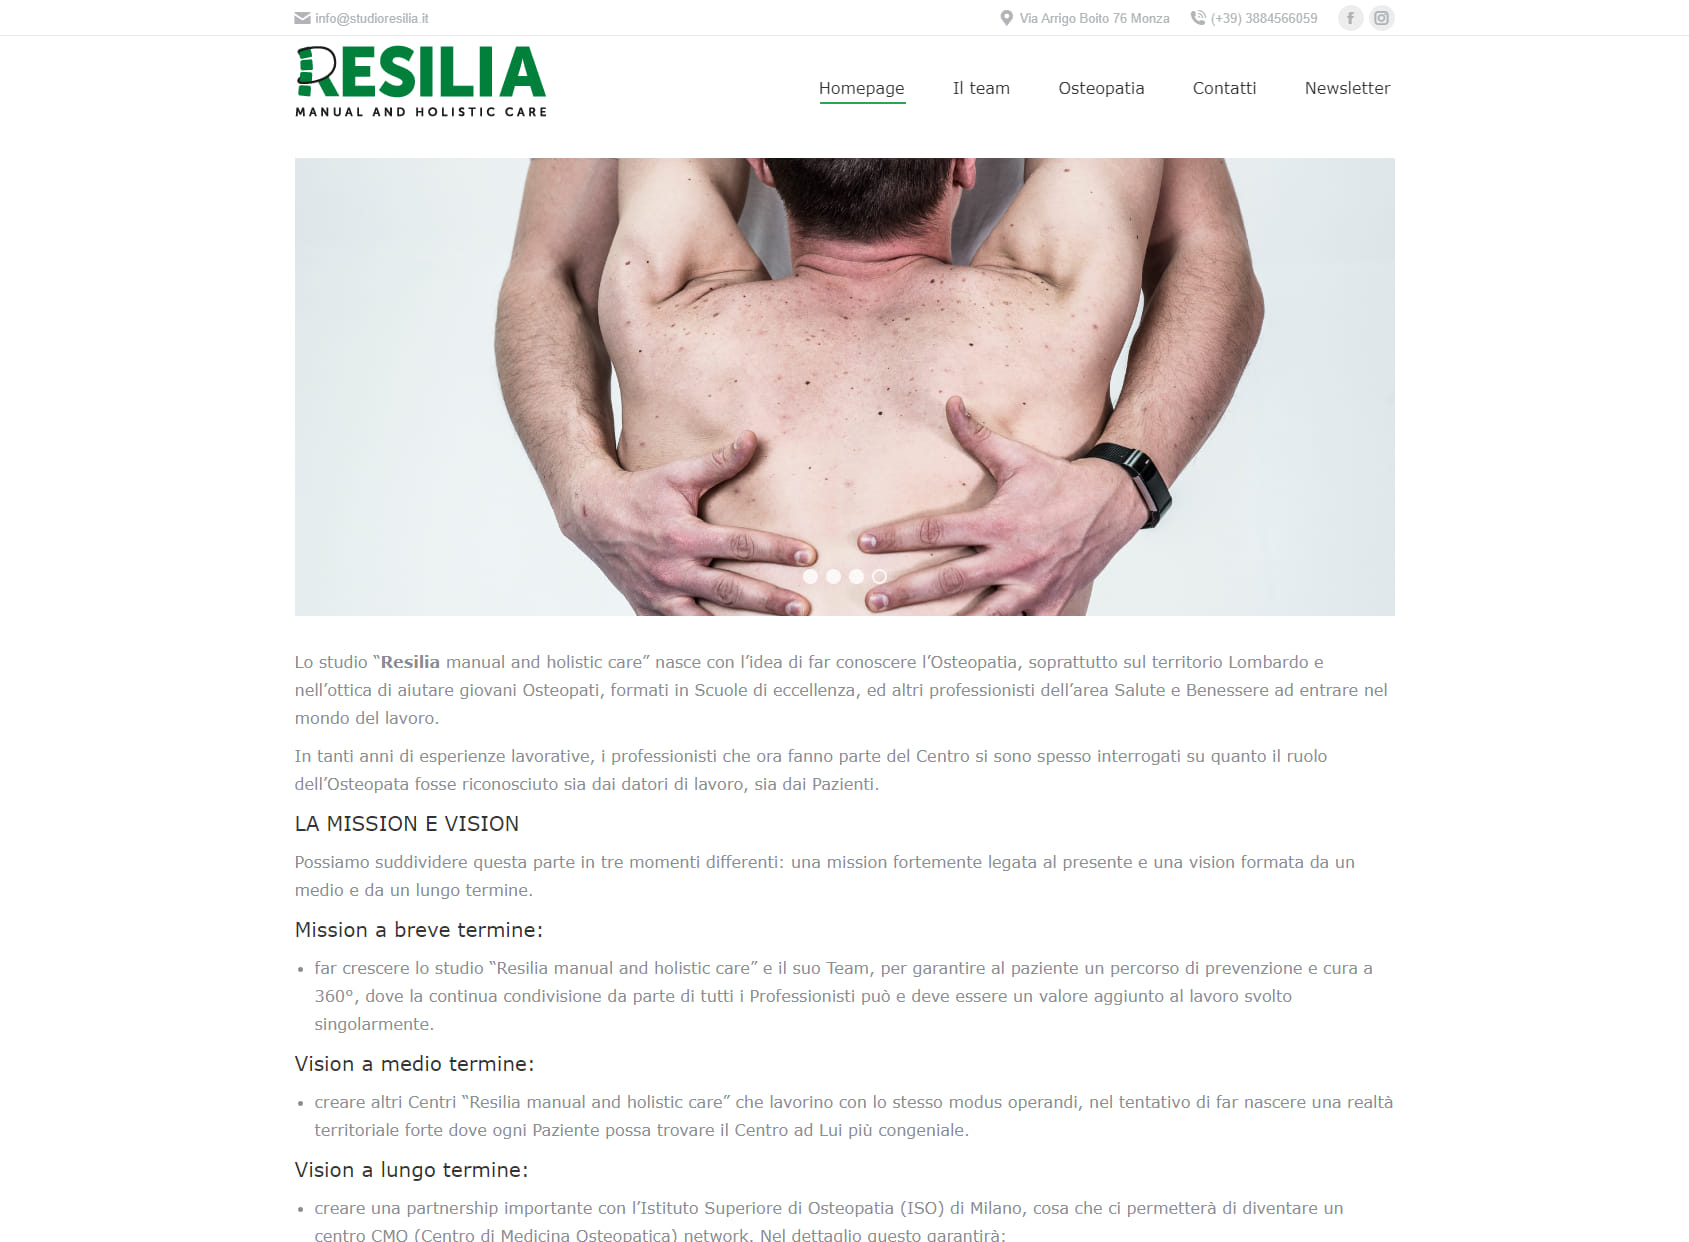 Resilia Manual and Holistic Care - Centro polifunzionale